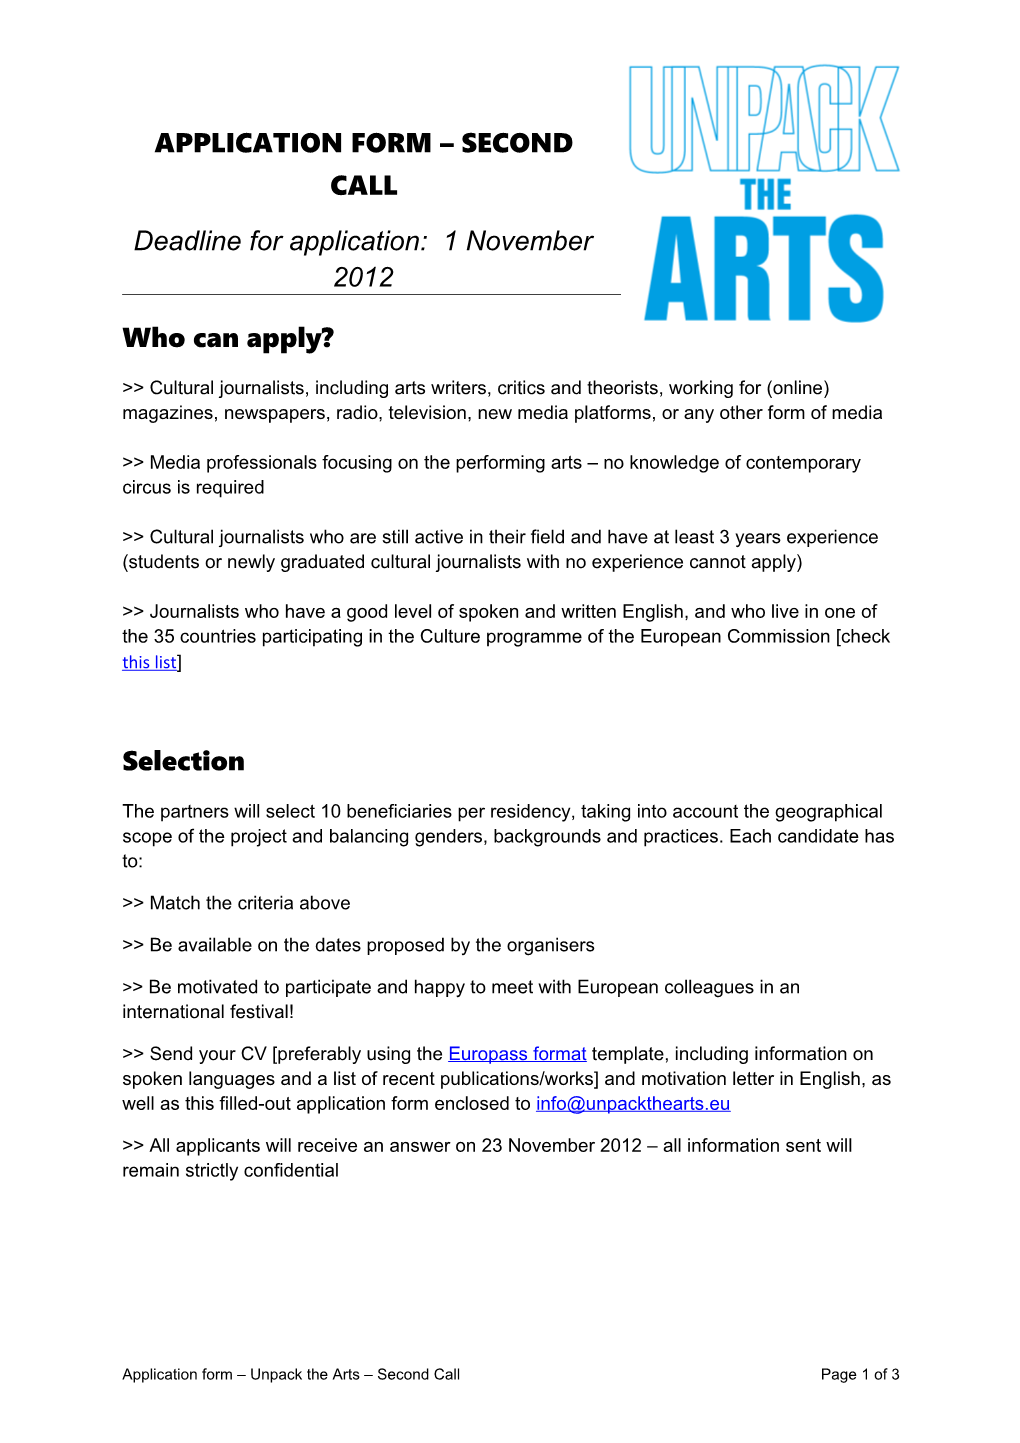 Deadline for Application: 1 November 2012